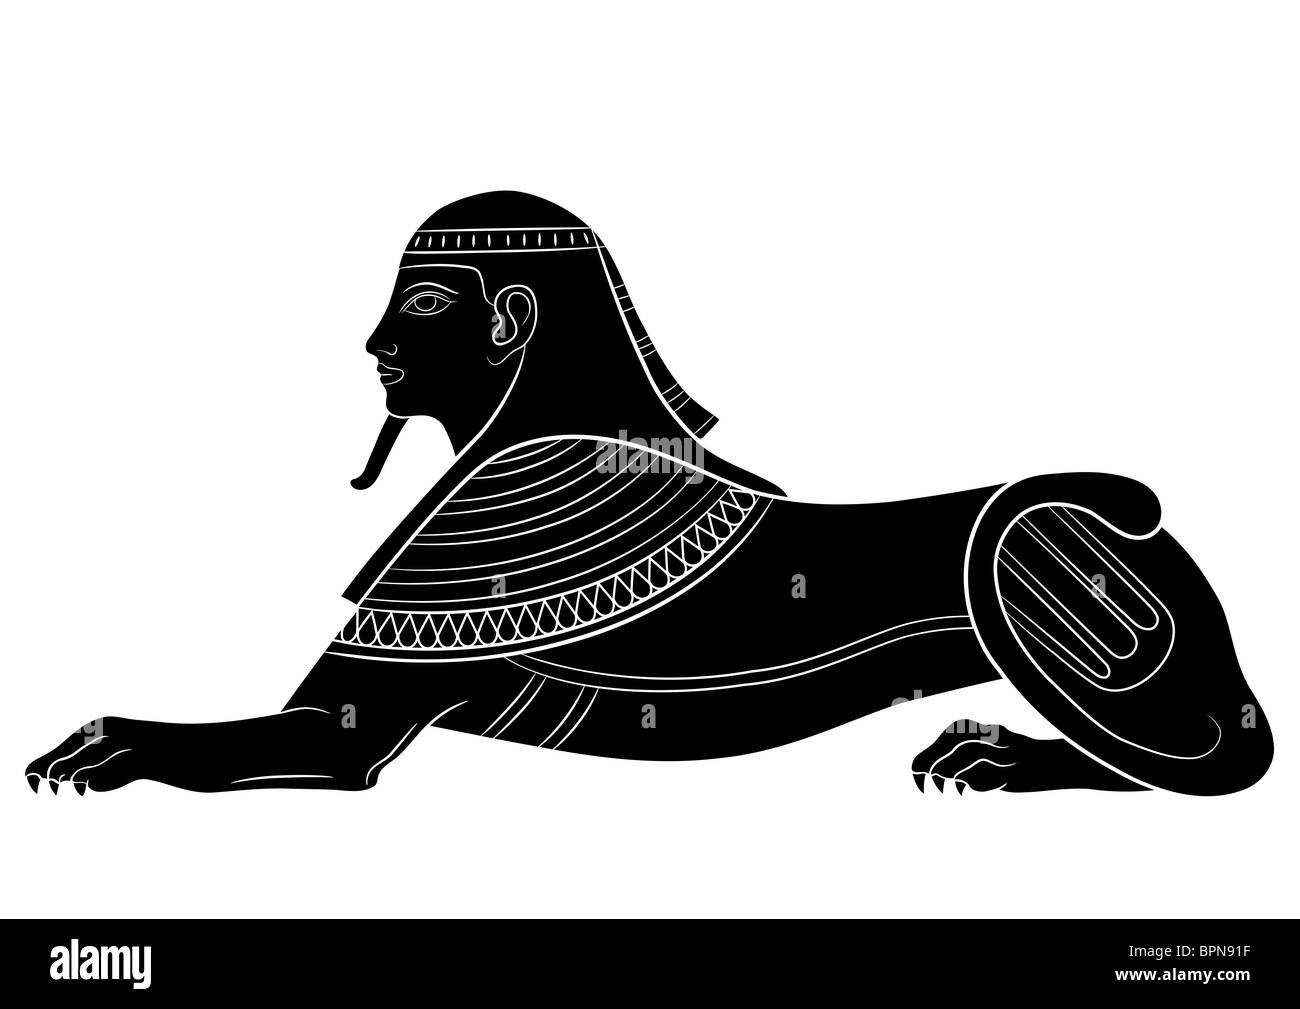 Sphinx - illustrazioni delle creature mitiche di antico Egitto Foto Stock